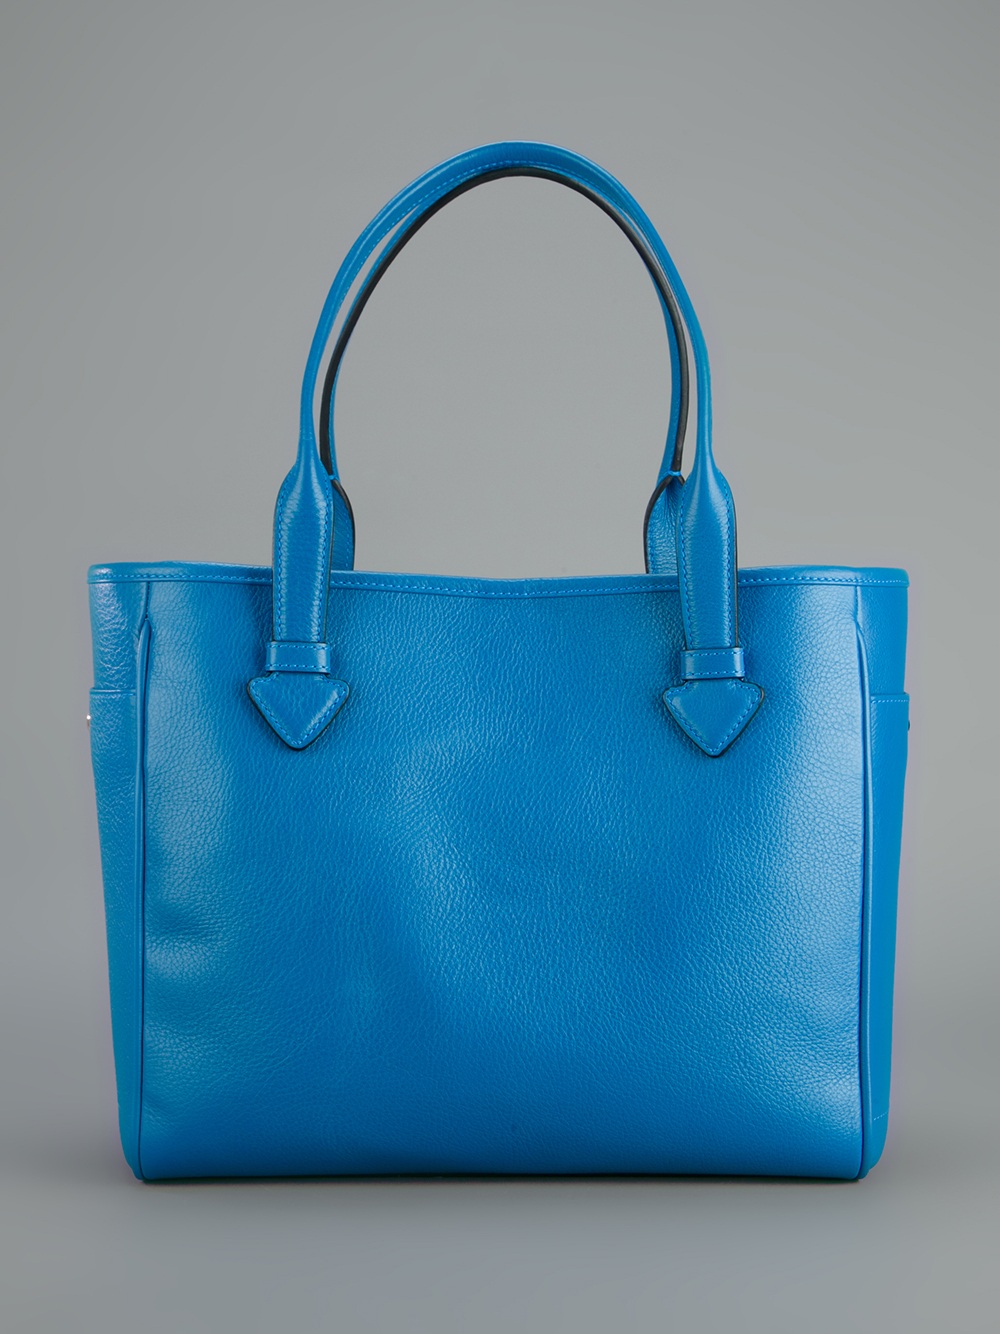 Loewe Tote Bag in Blue - Lyst